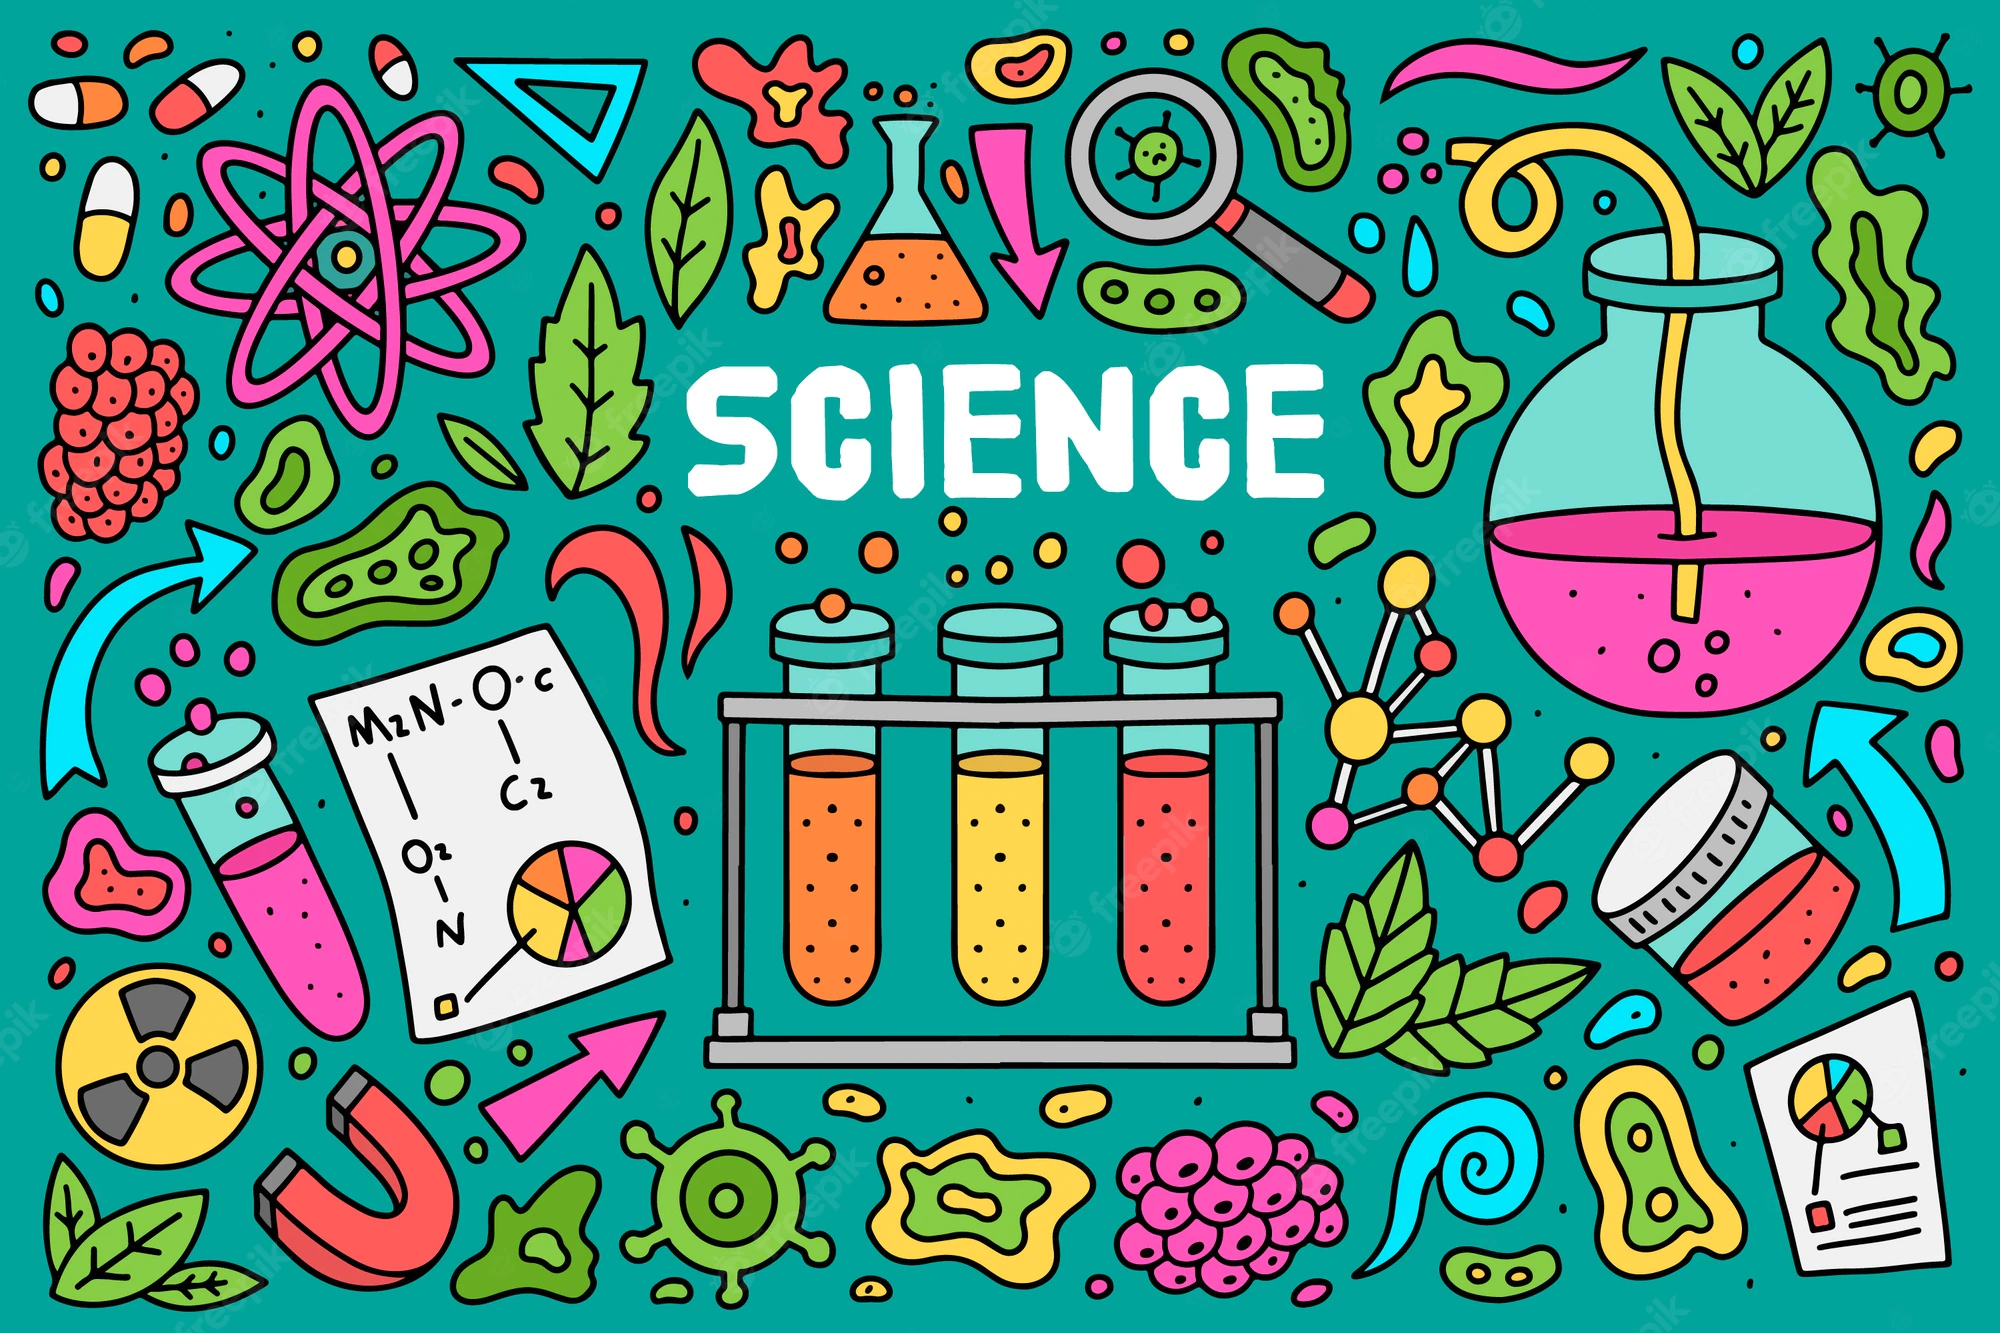 Επιστήμη μάρκετινγκ: Πώς επηρεάζει η χρήση της Επιστήμης την προώθηση προϊόντων